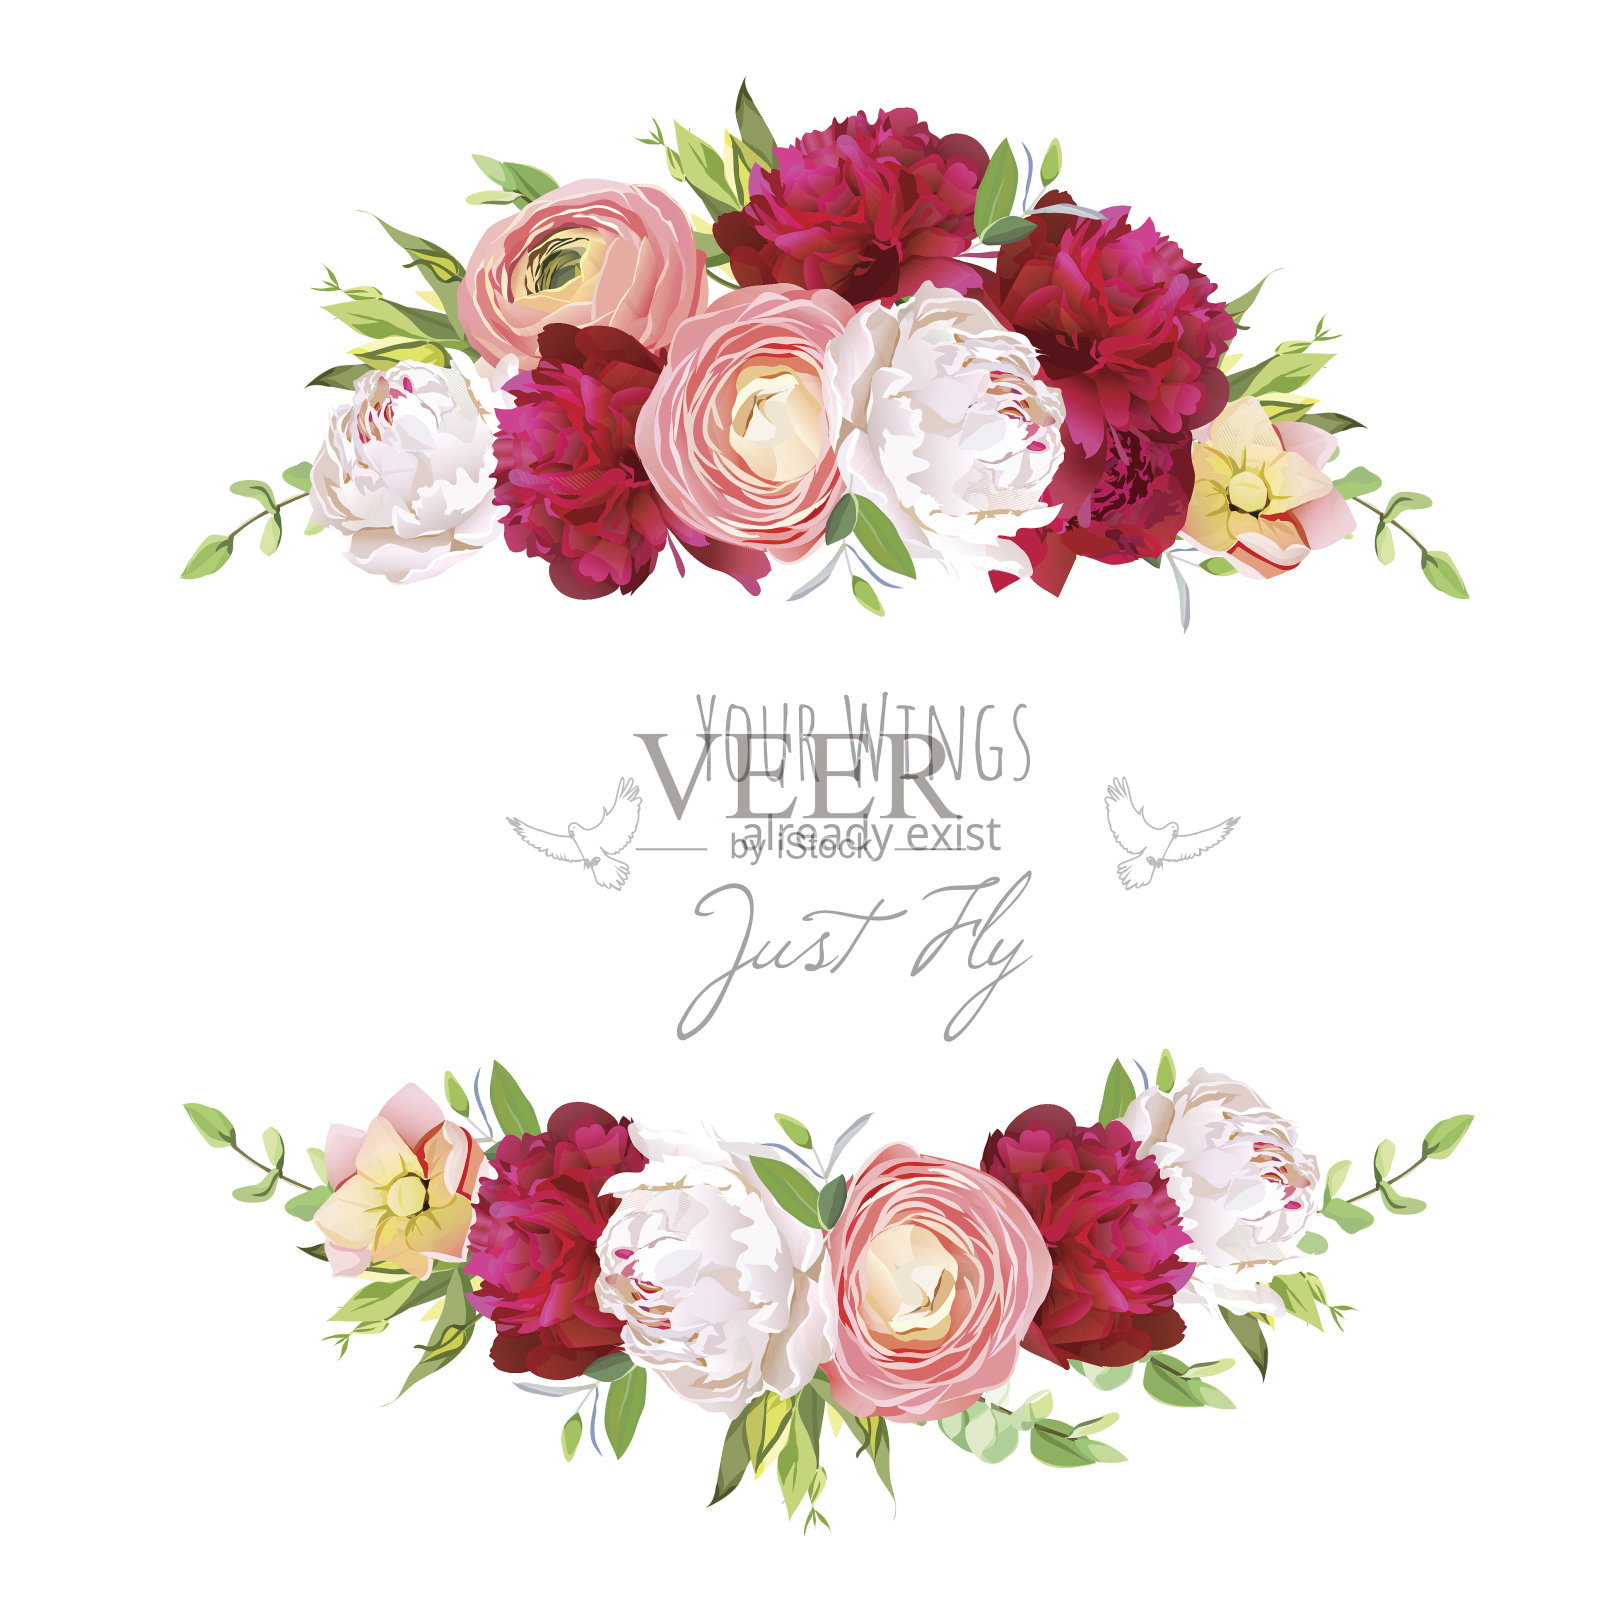 紫红色和白色牡丹，粉红色毛茛，玫瑰矢车菊插画图片素材